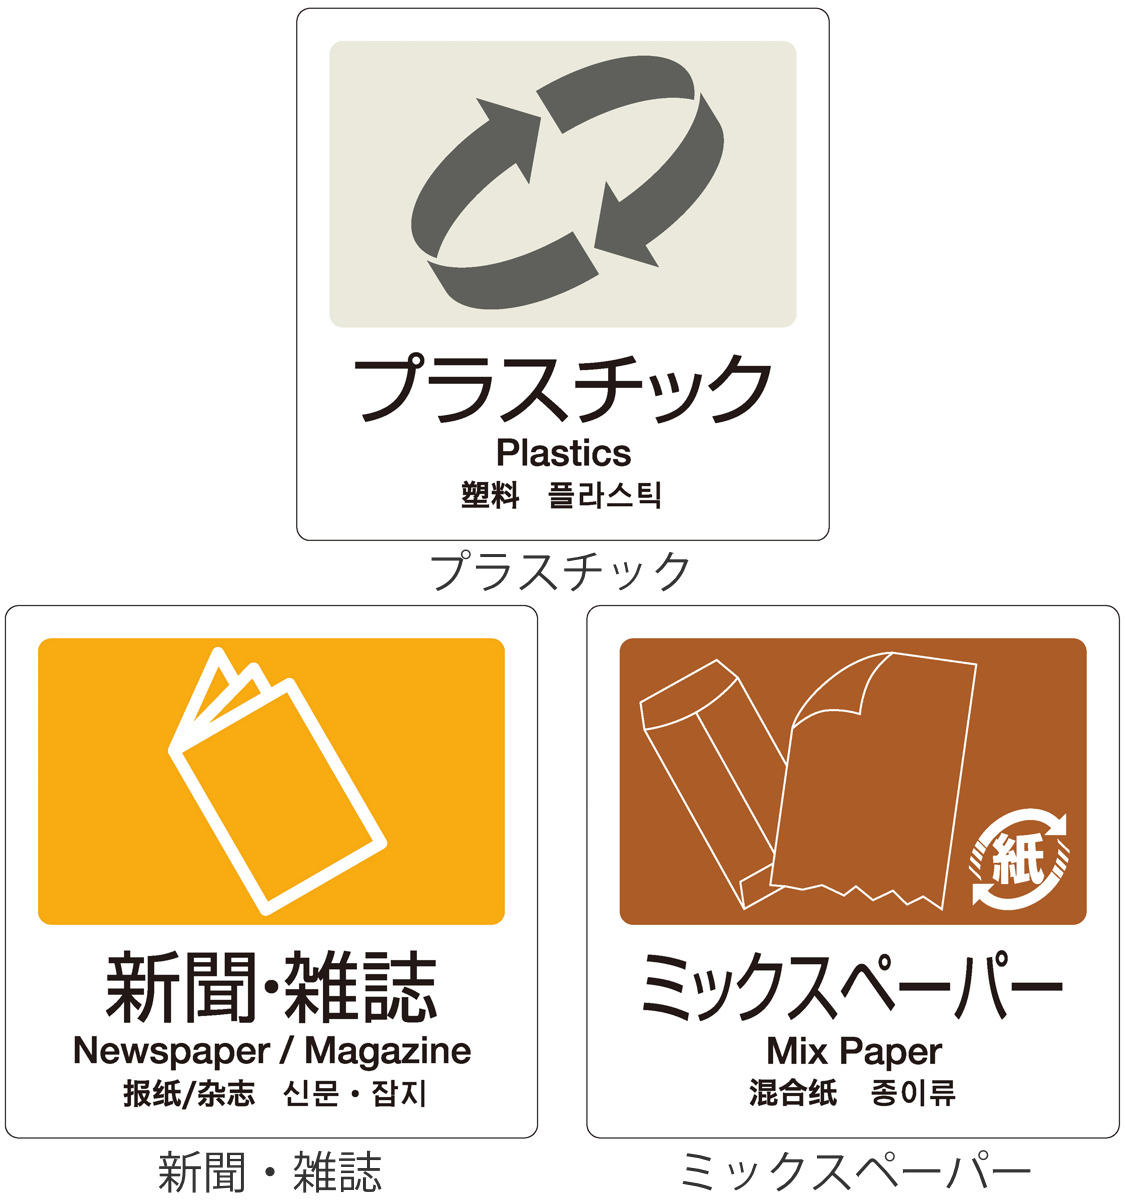 dショッピング |分別ラベル 4ヵ国語 プラスチック 新聞雑誌 ミックス